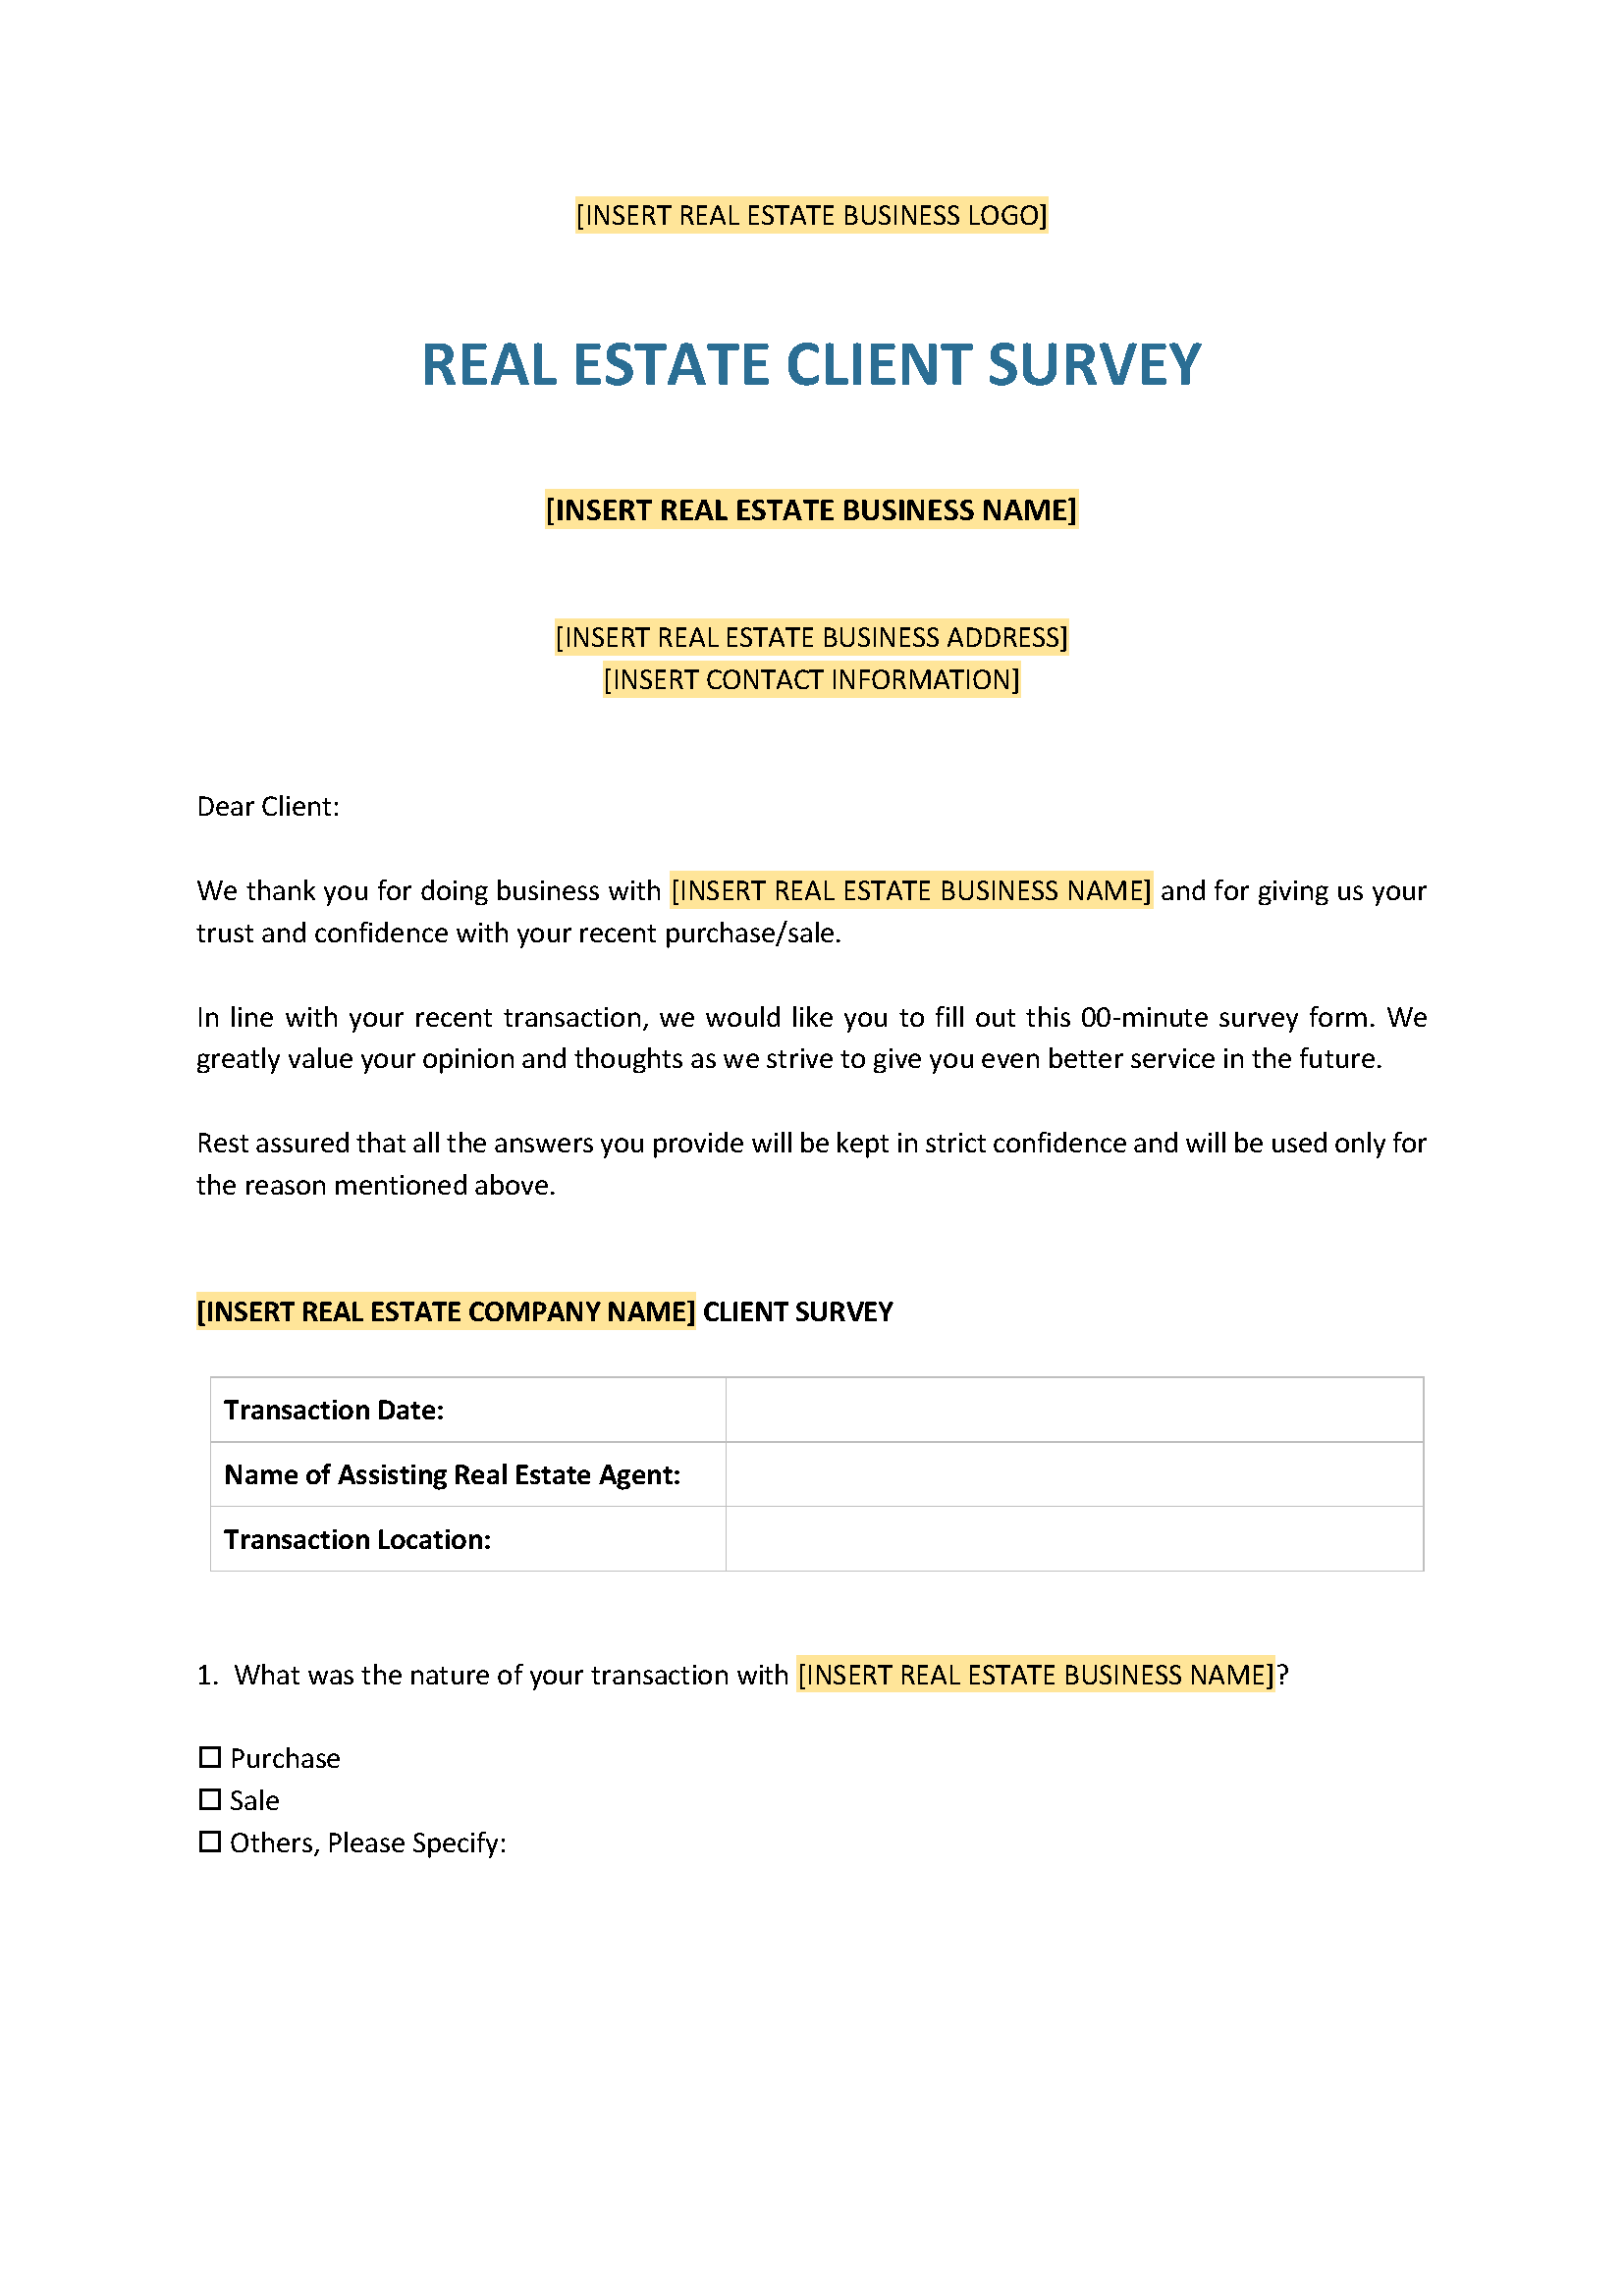 Real estate client survey